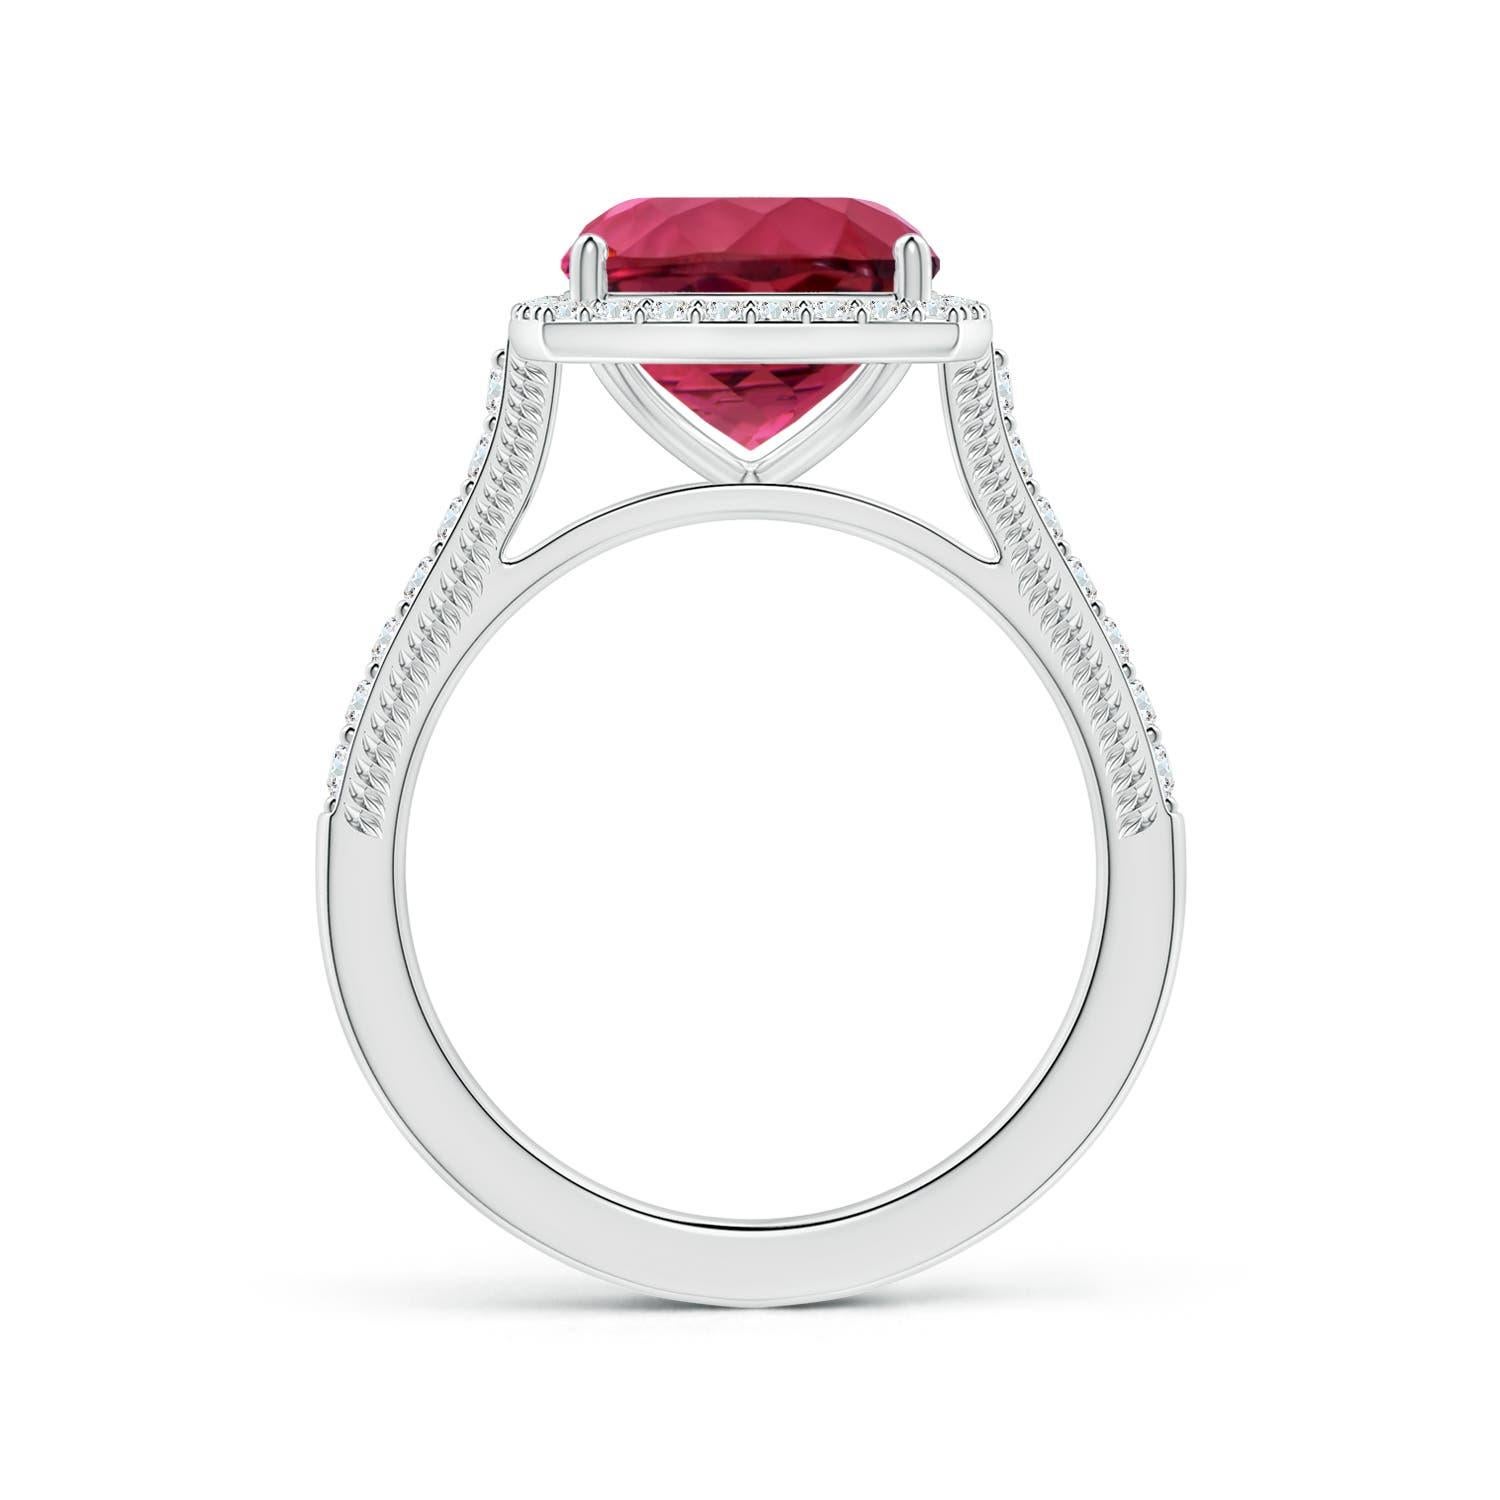 ANGARA GIA Certified Natural Pink Tourmaline Halo Ring in White Gold 2